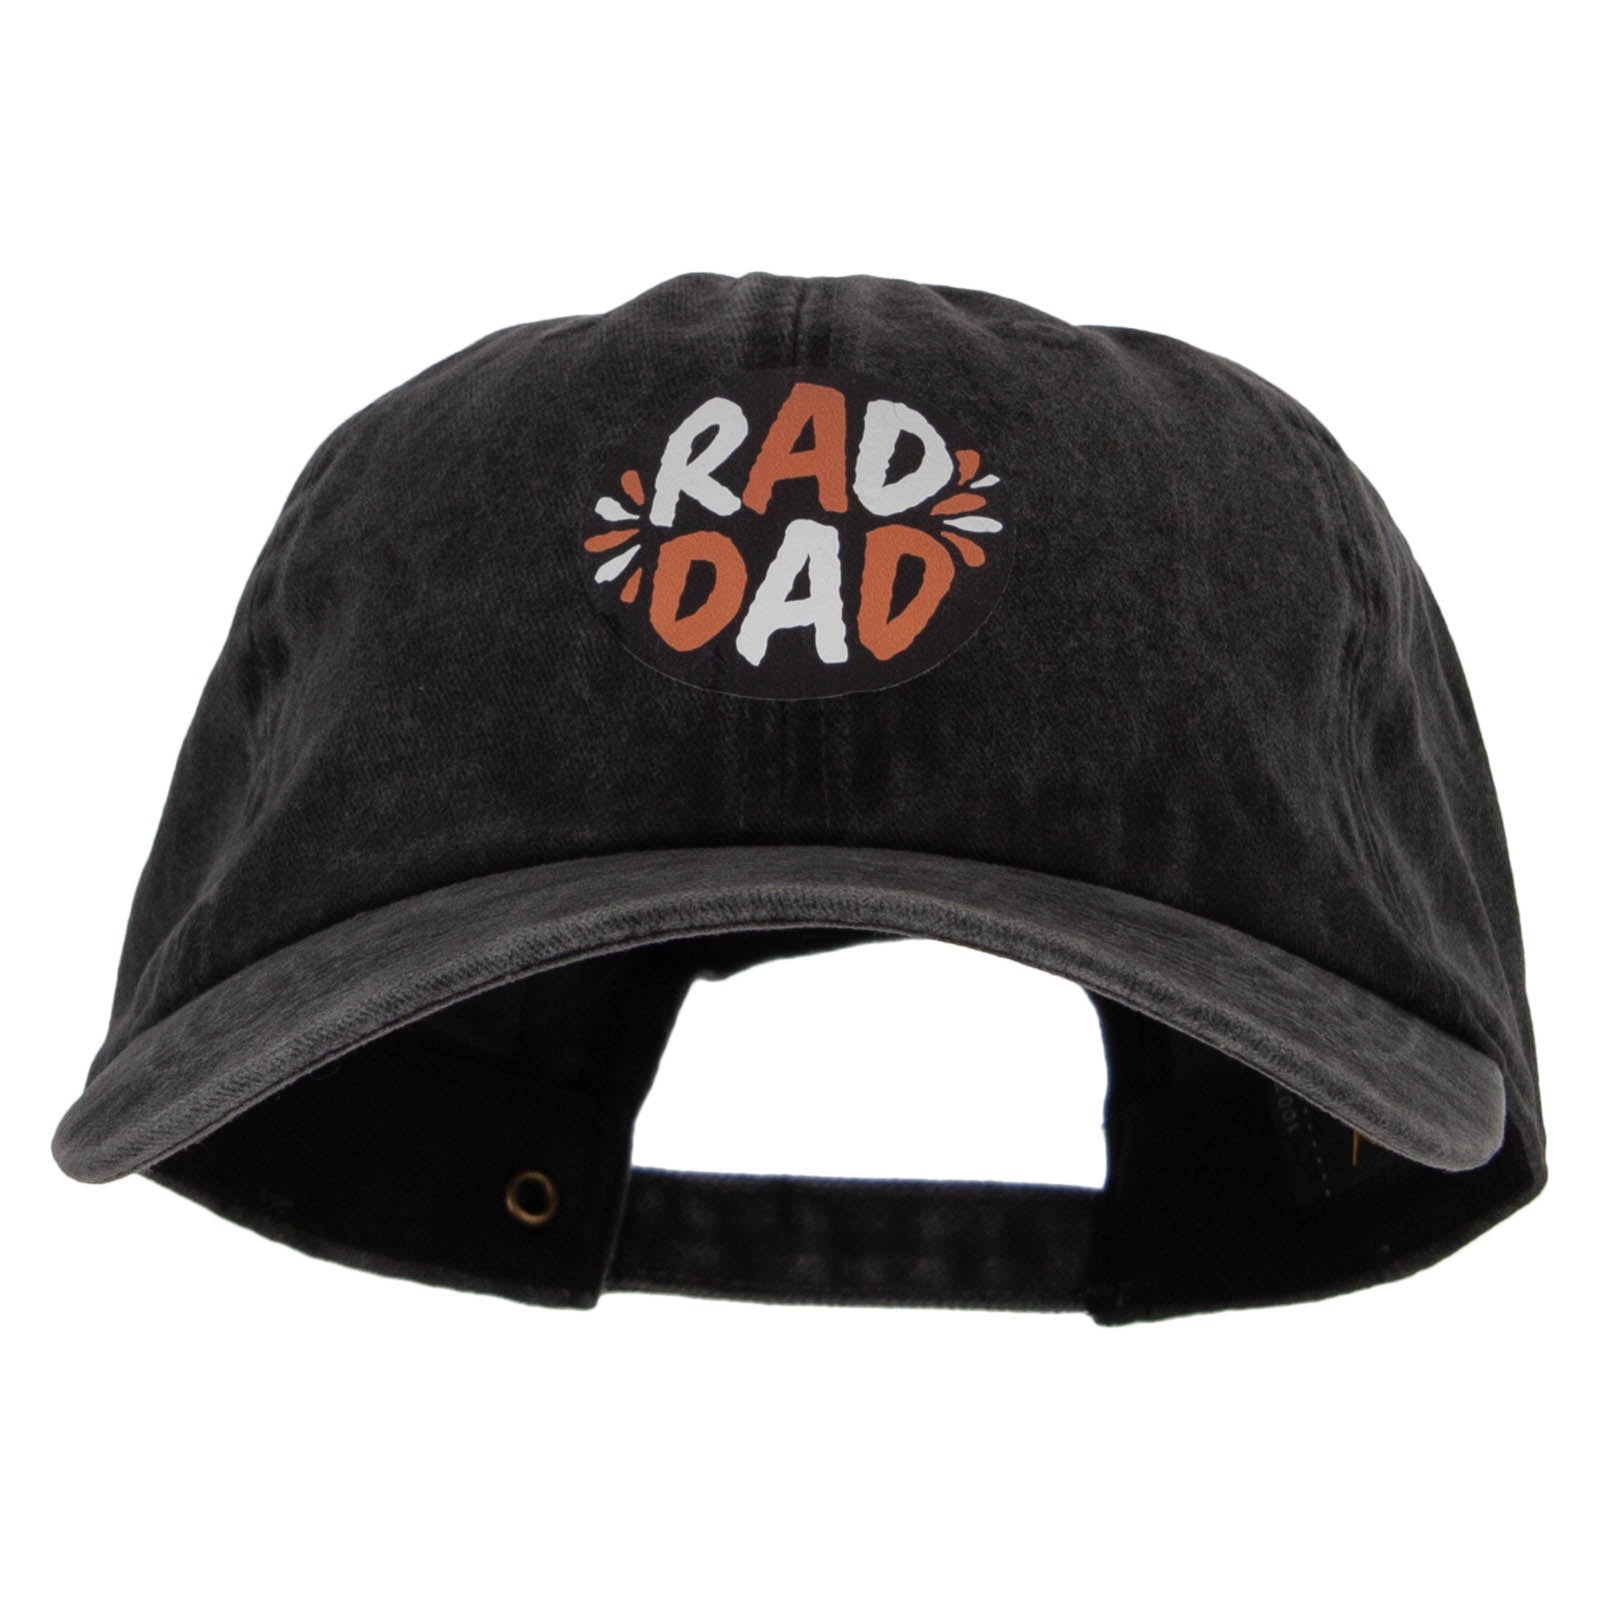 Raddest Dad Heat Transfer Unstructured Cotton Cap - Black OSFM